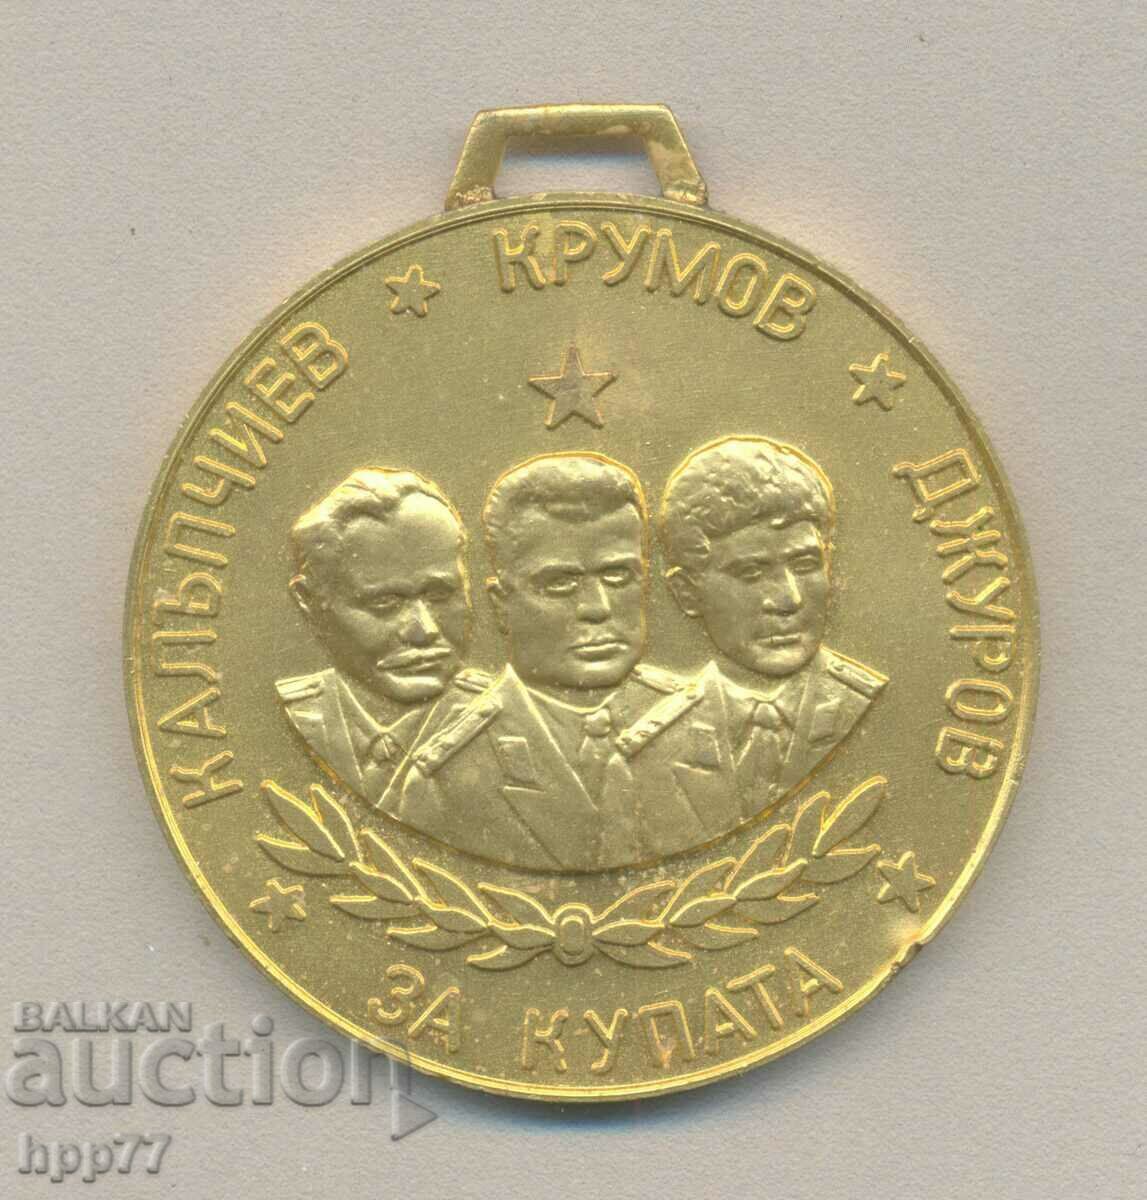 Σπάνιο μετάλλιο απονομής από τον Διεθνή Διαγωνισμό Αλεξιπτωτιστών